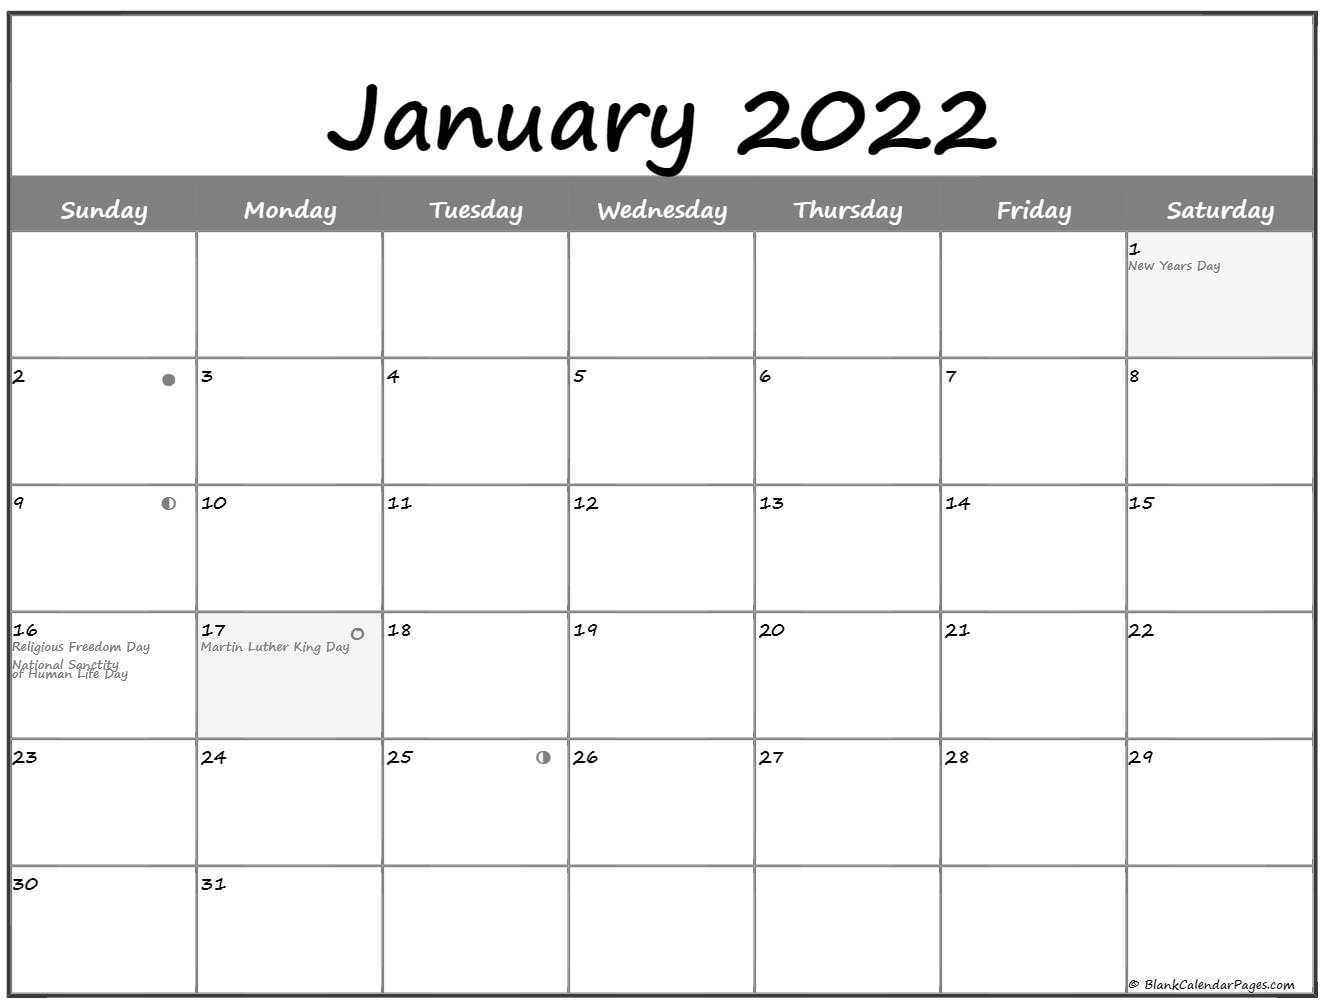 January 2022 Lunar Calendar | Moon Phase Calendar